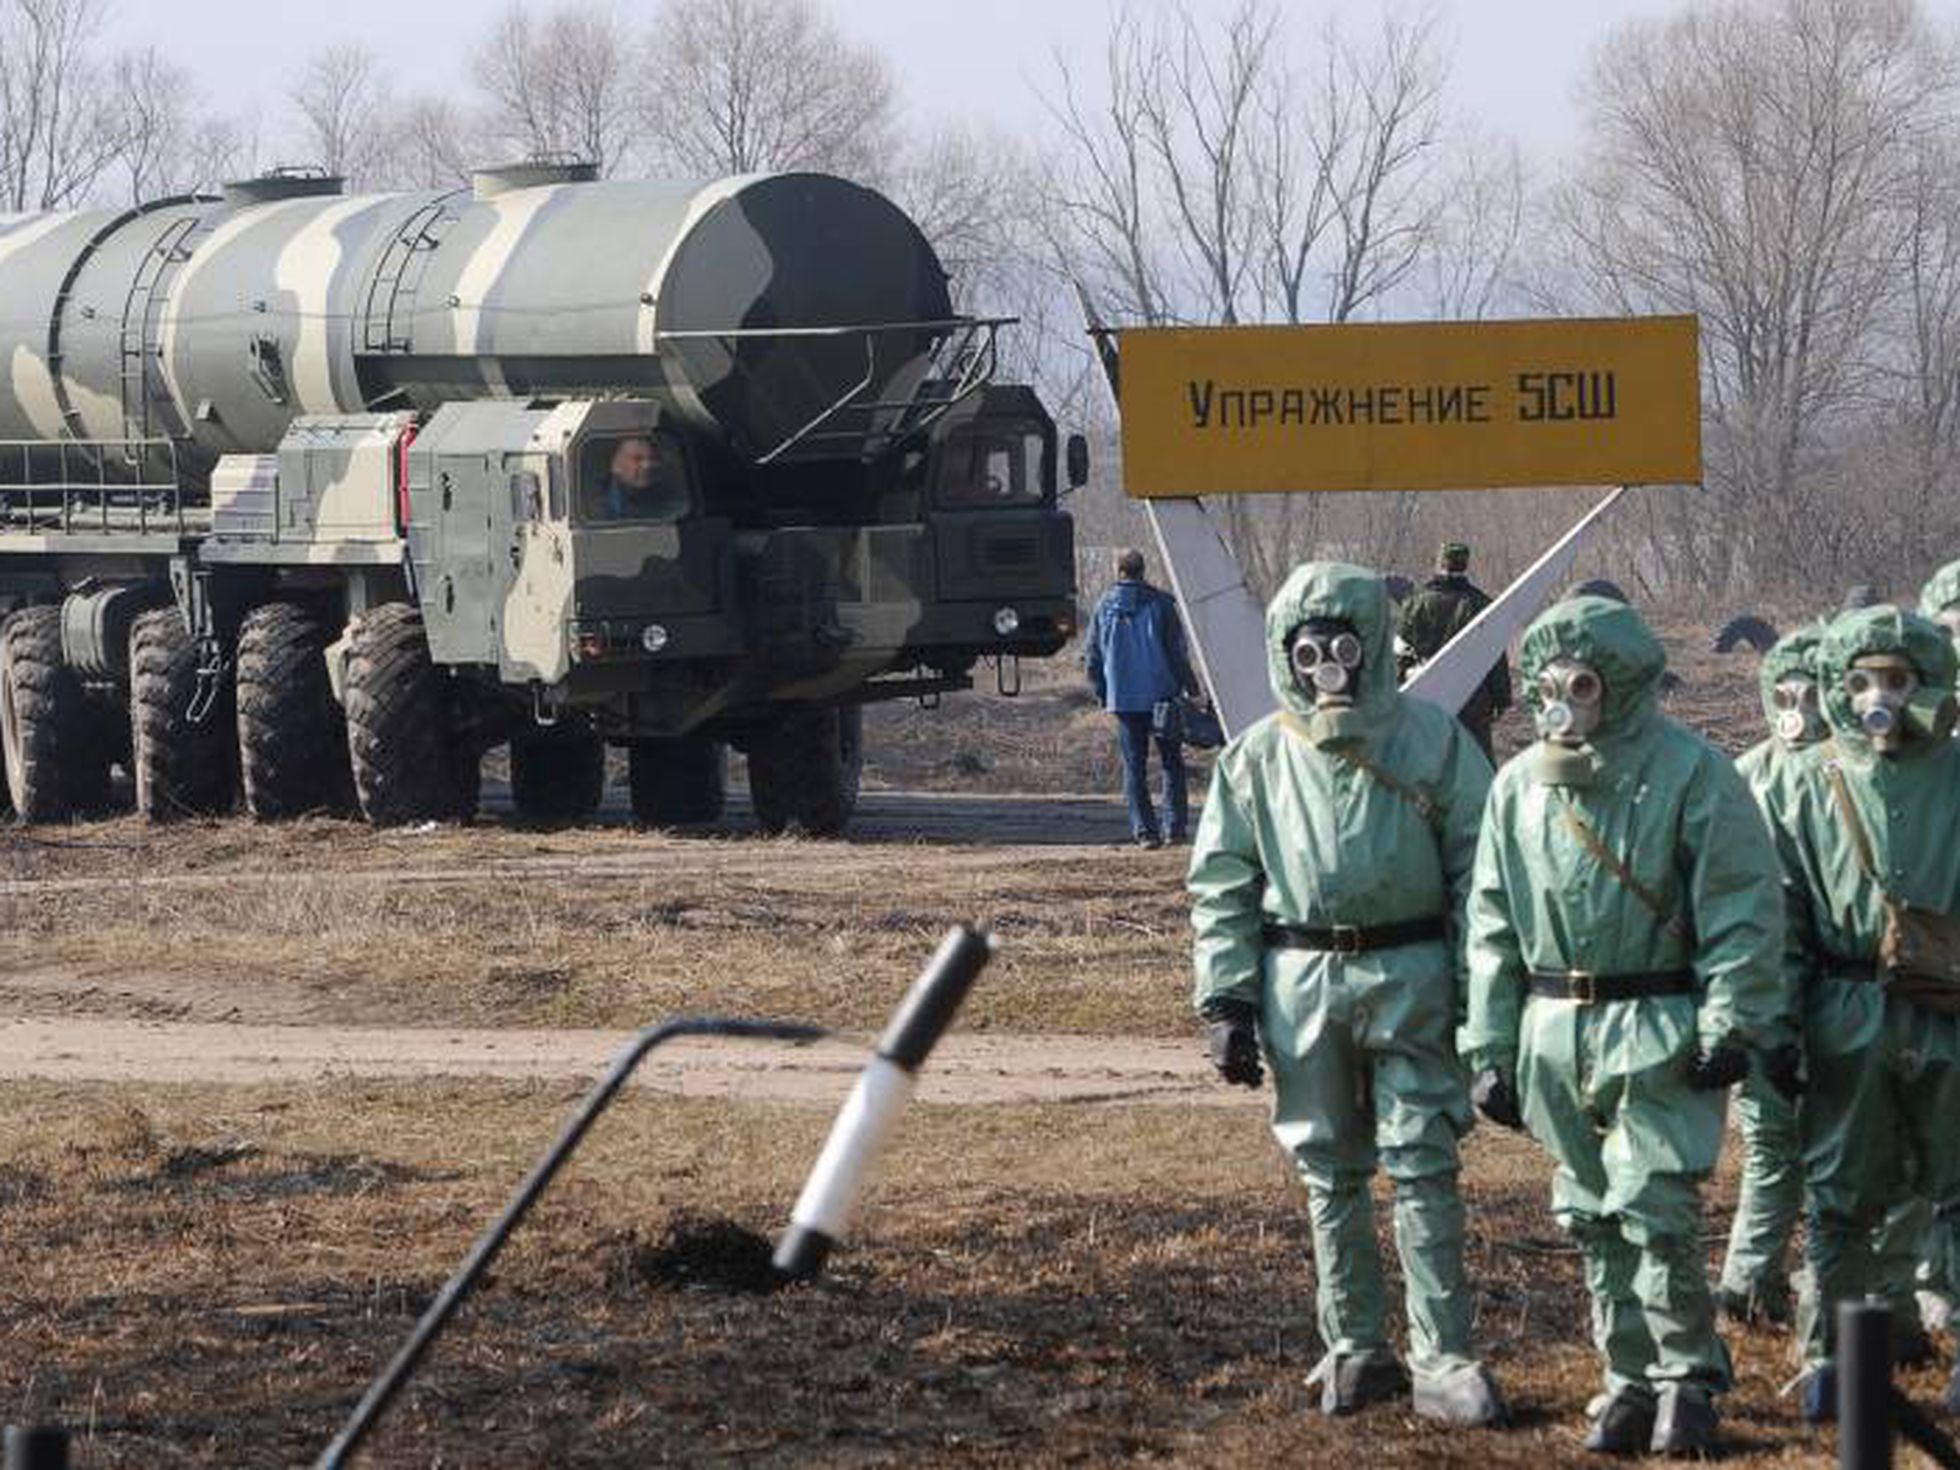 TGSBWACN4KJQMIXJP76RSQ5PC4 Armas nucleares podem ser usadas na Ucrânia, diz autoridade russa